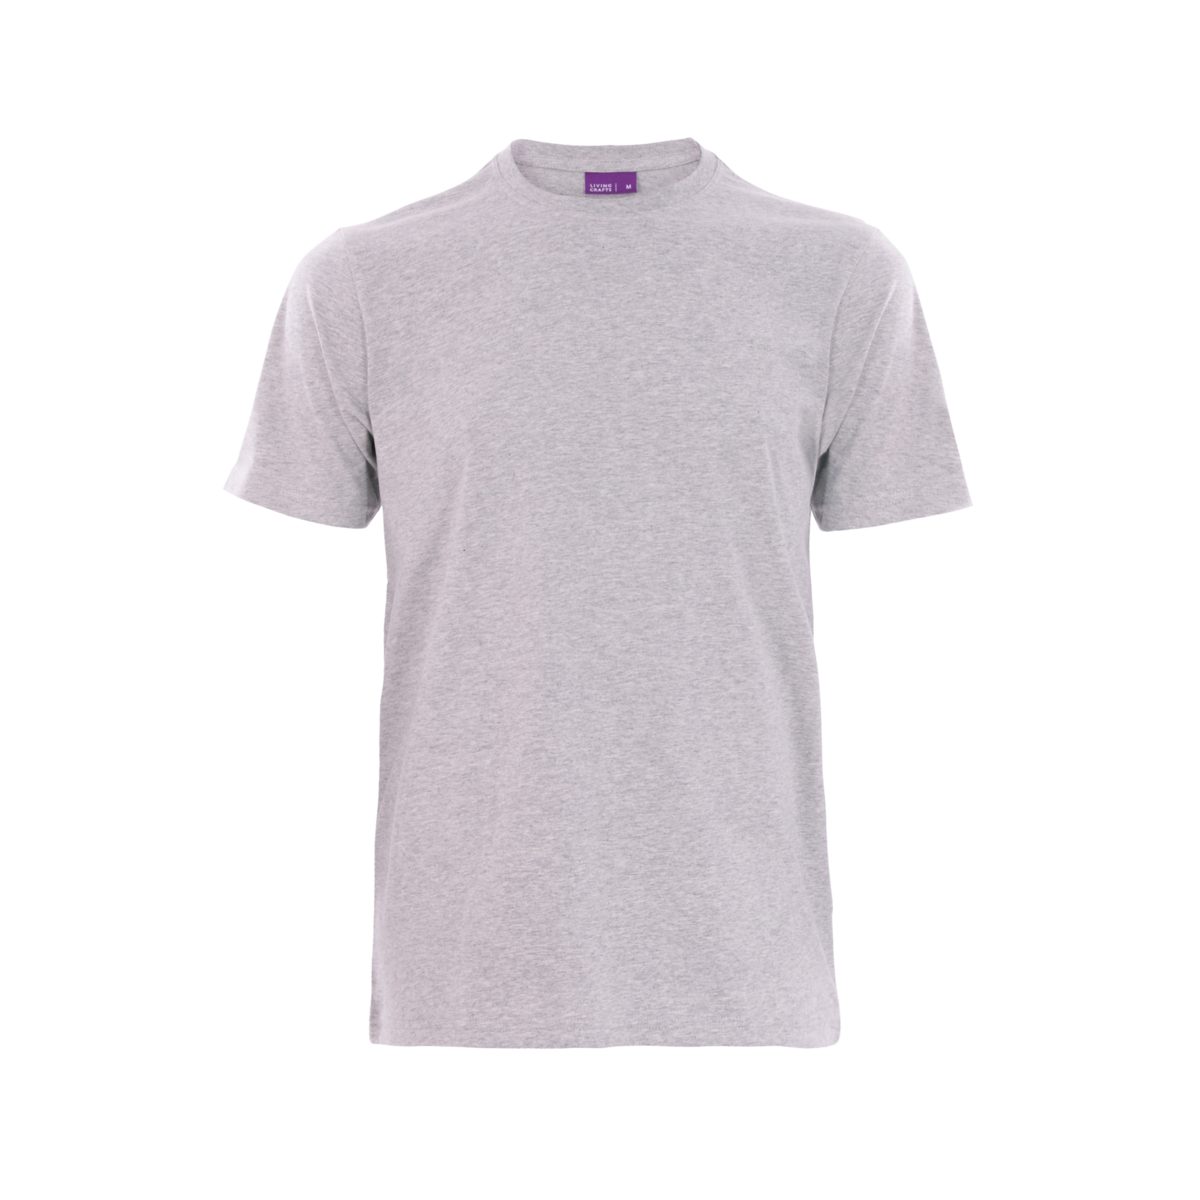 CLARK Single LIVING Grey Melange T-Shirt anschmiegsames Jersey Weiches, CRAFTS